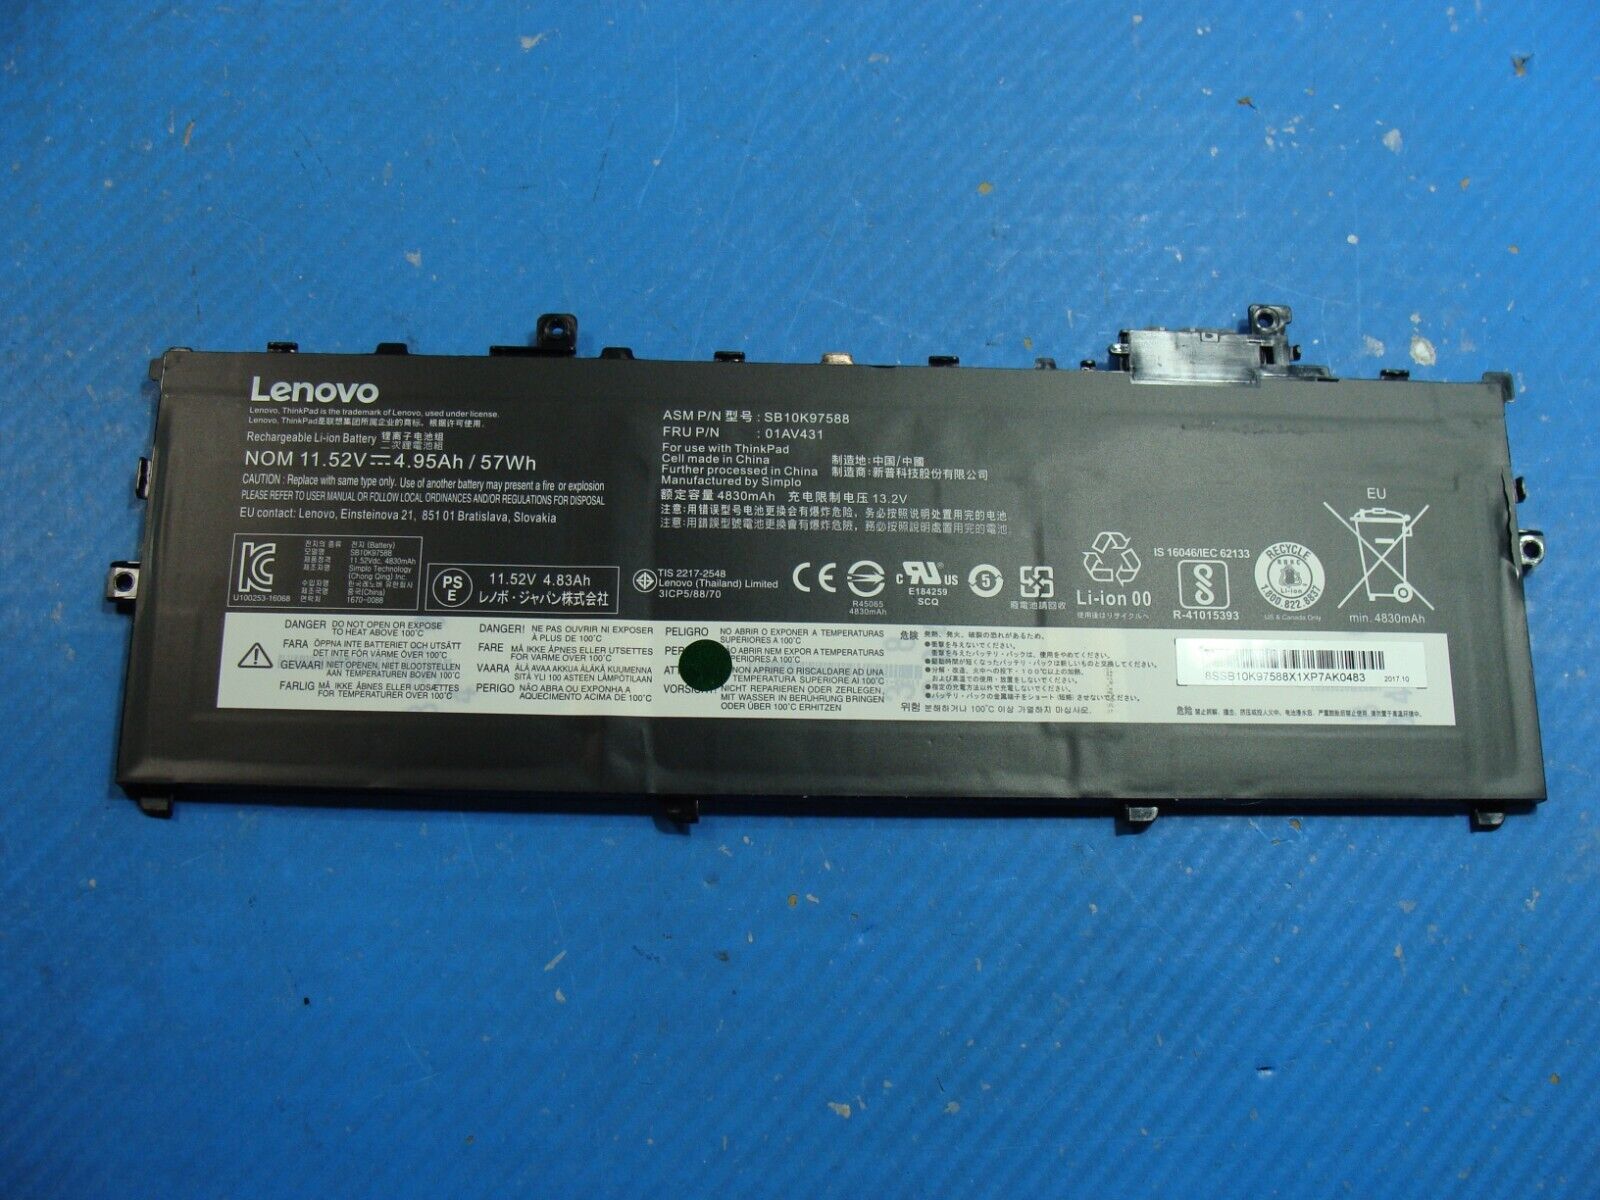 Lenovo ThinkPad X1 Carbon 5th Gen 14 OEM Battery 11.52V 57Wh 4830mAh 01AV431